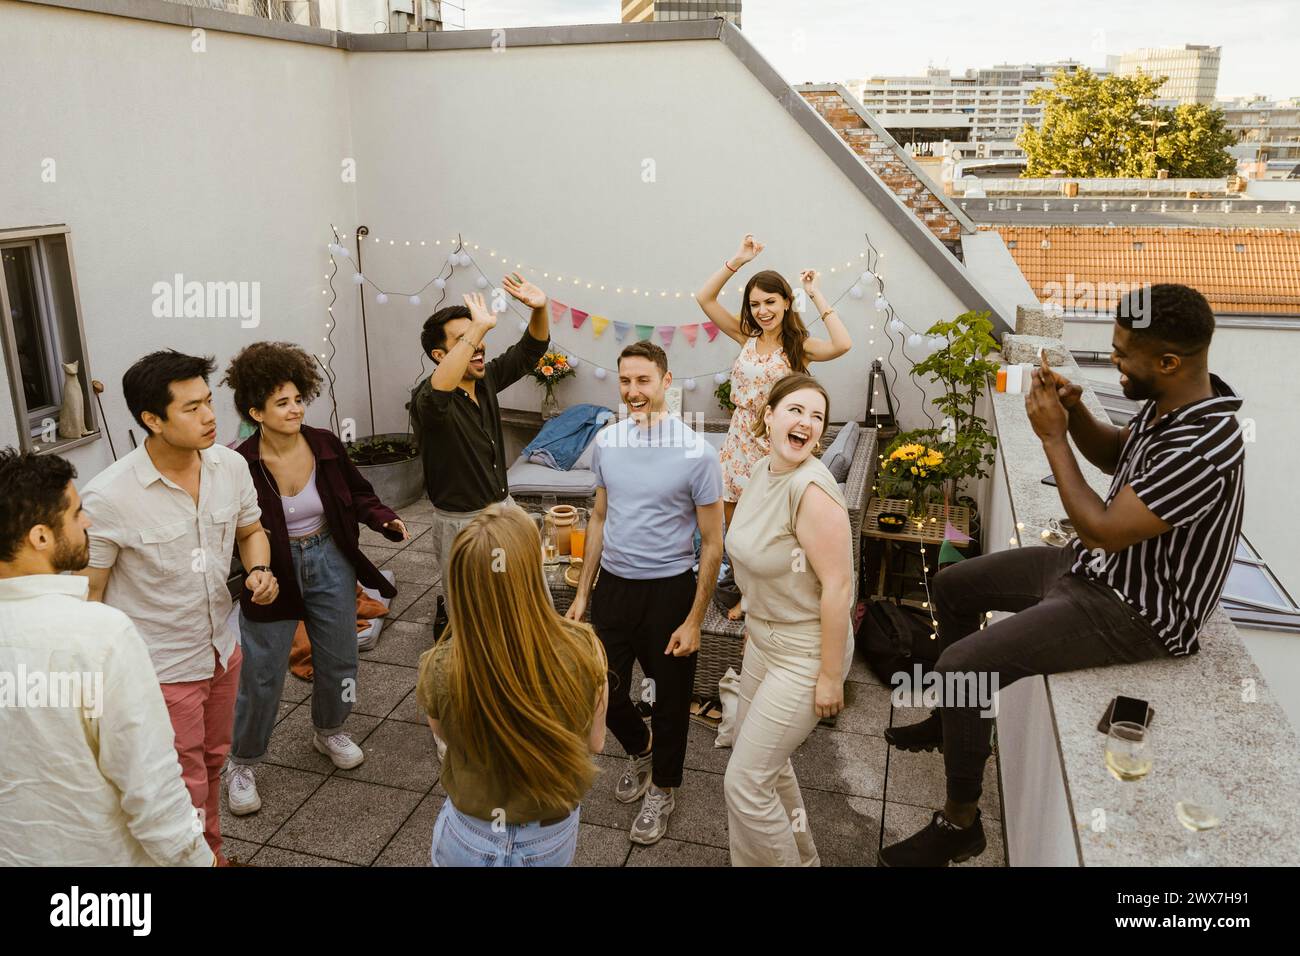 Ein Mann fotografiert eine Gruppe von Freunden, die auf einer Party auf dem Balkon tanzen Stockfoto